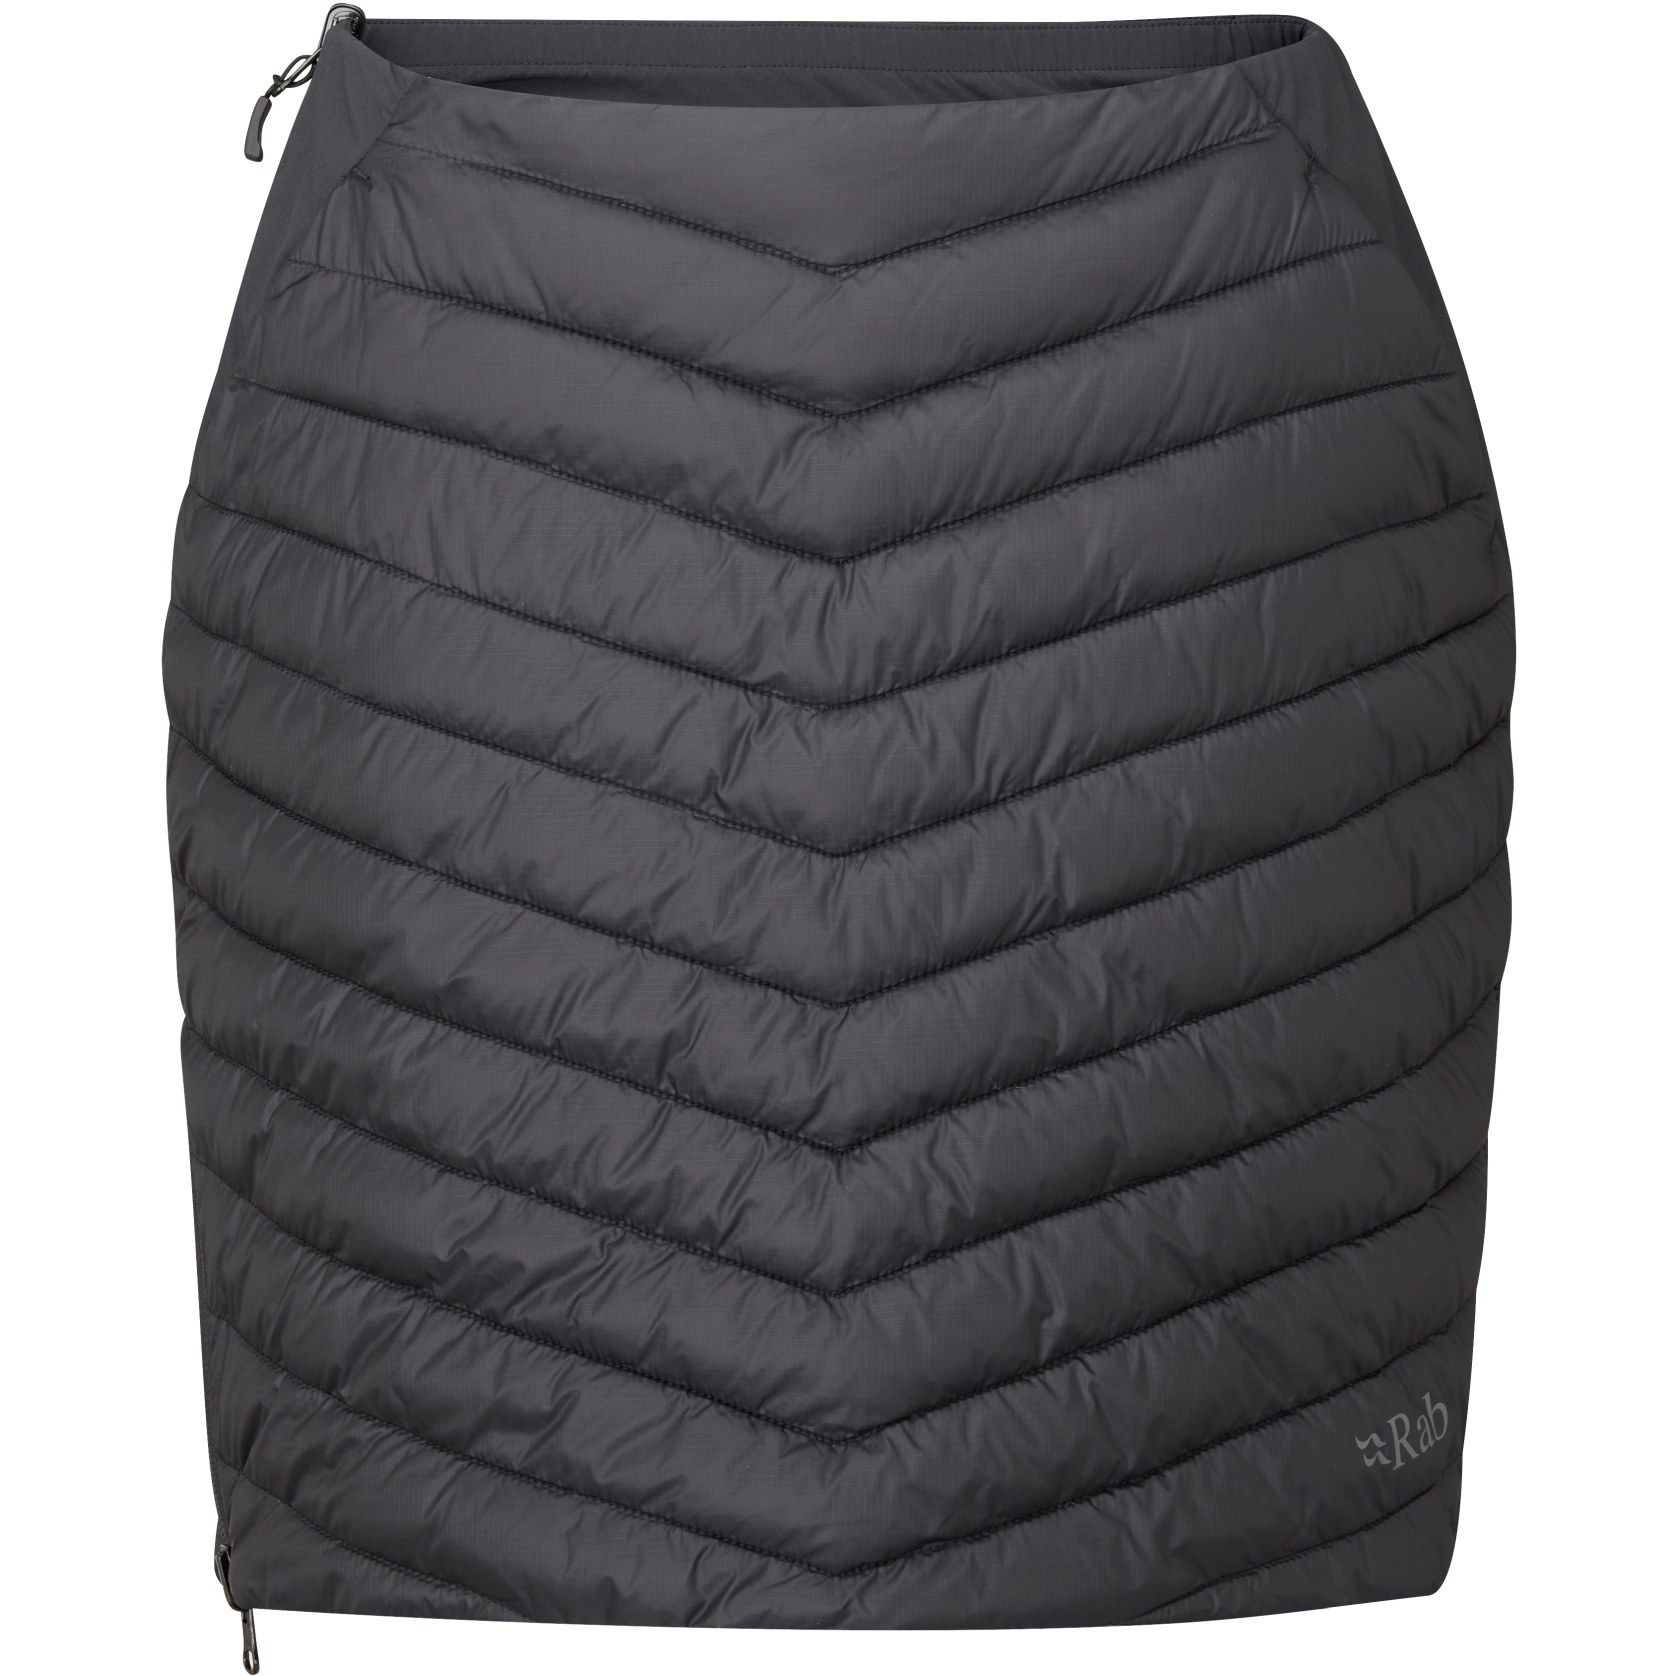 Rab Cirrus Insulated Skirt Women - black/graphene | BIKE24